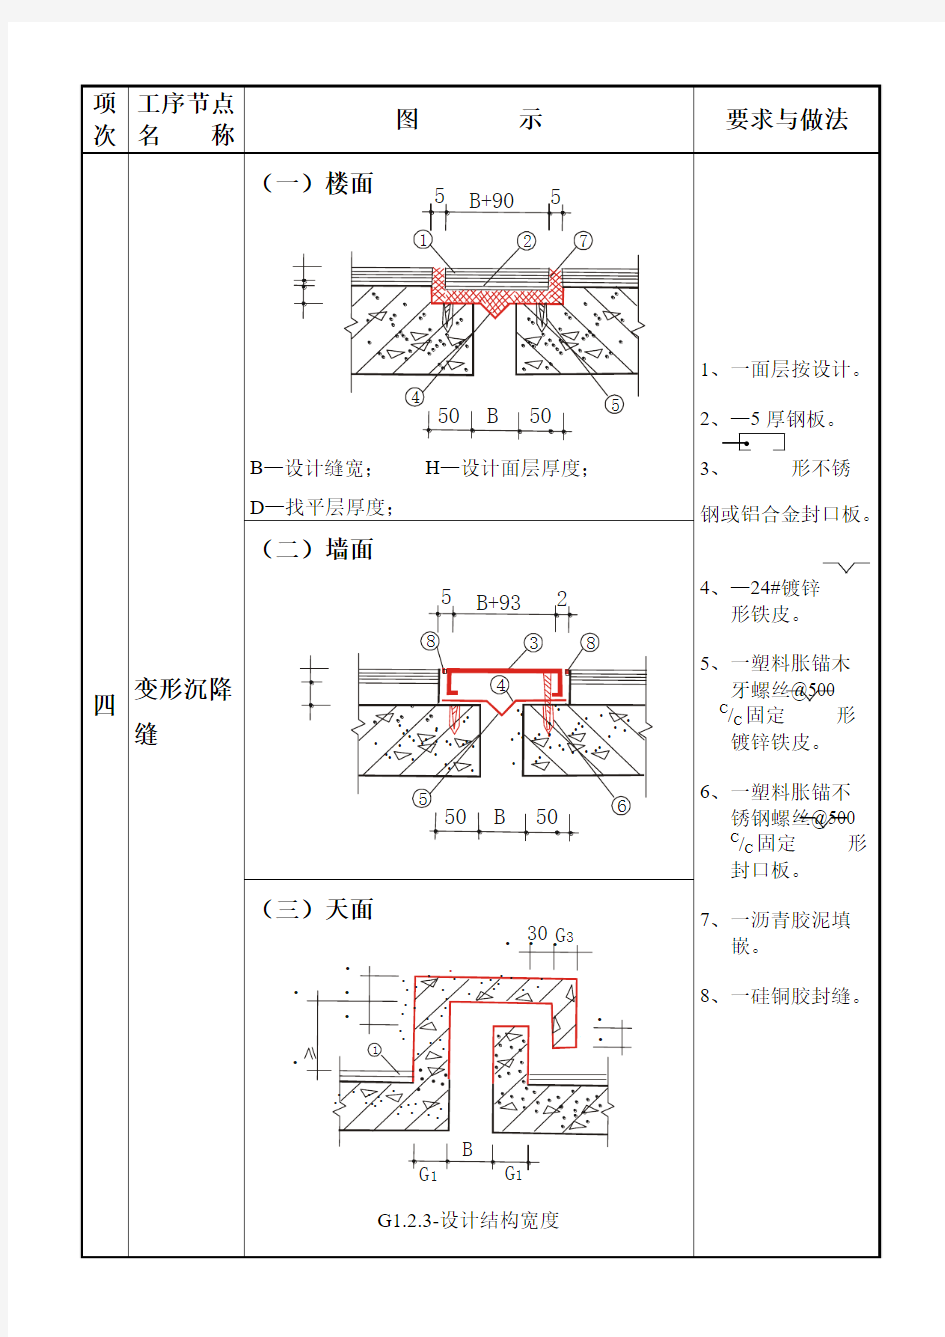 【精品】建筑工程质量通病图集大全(18页)